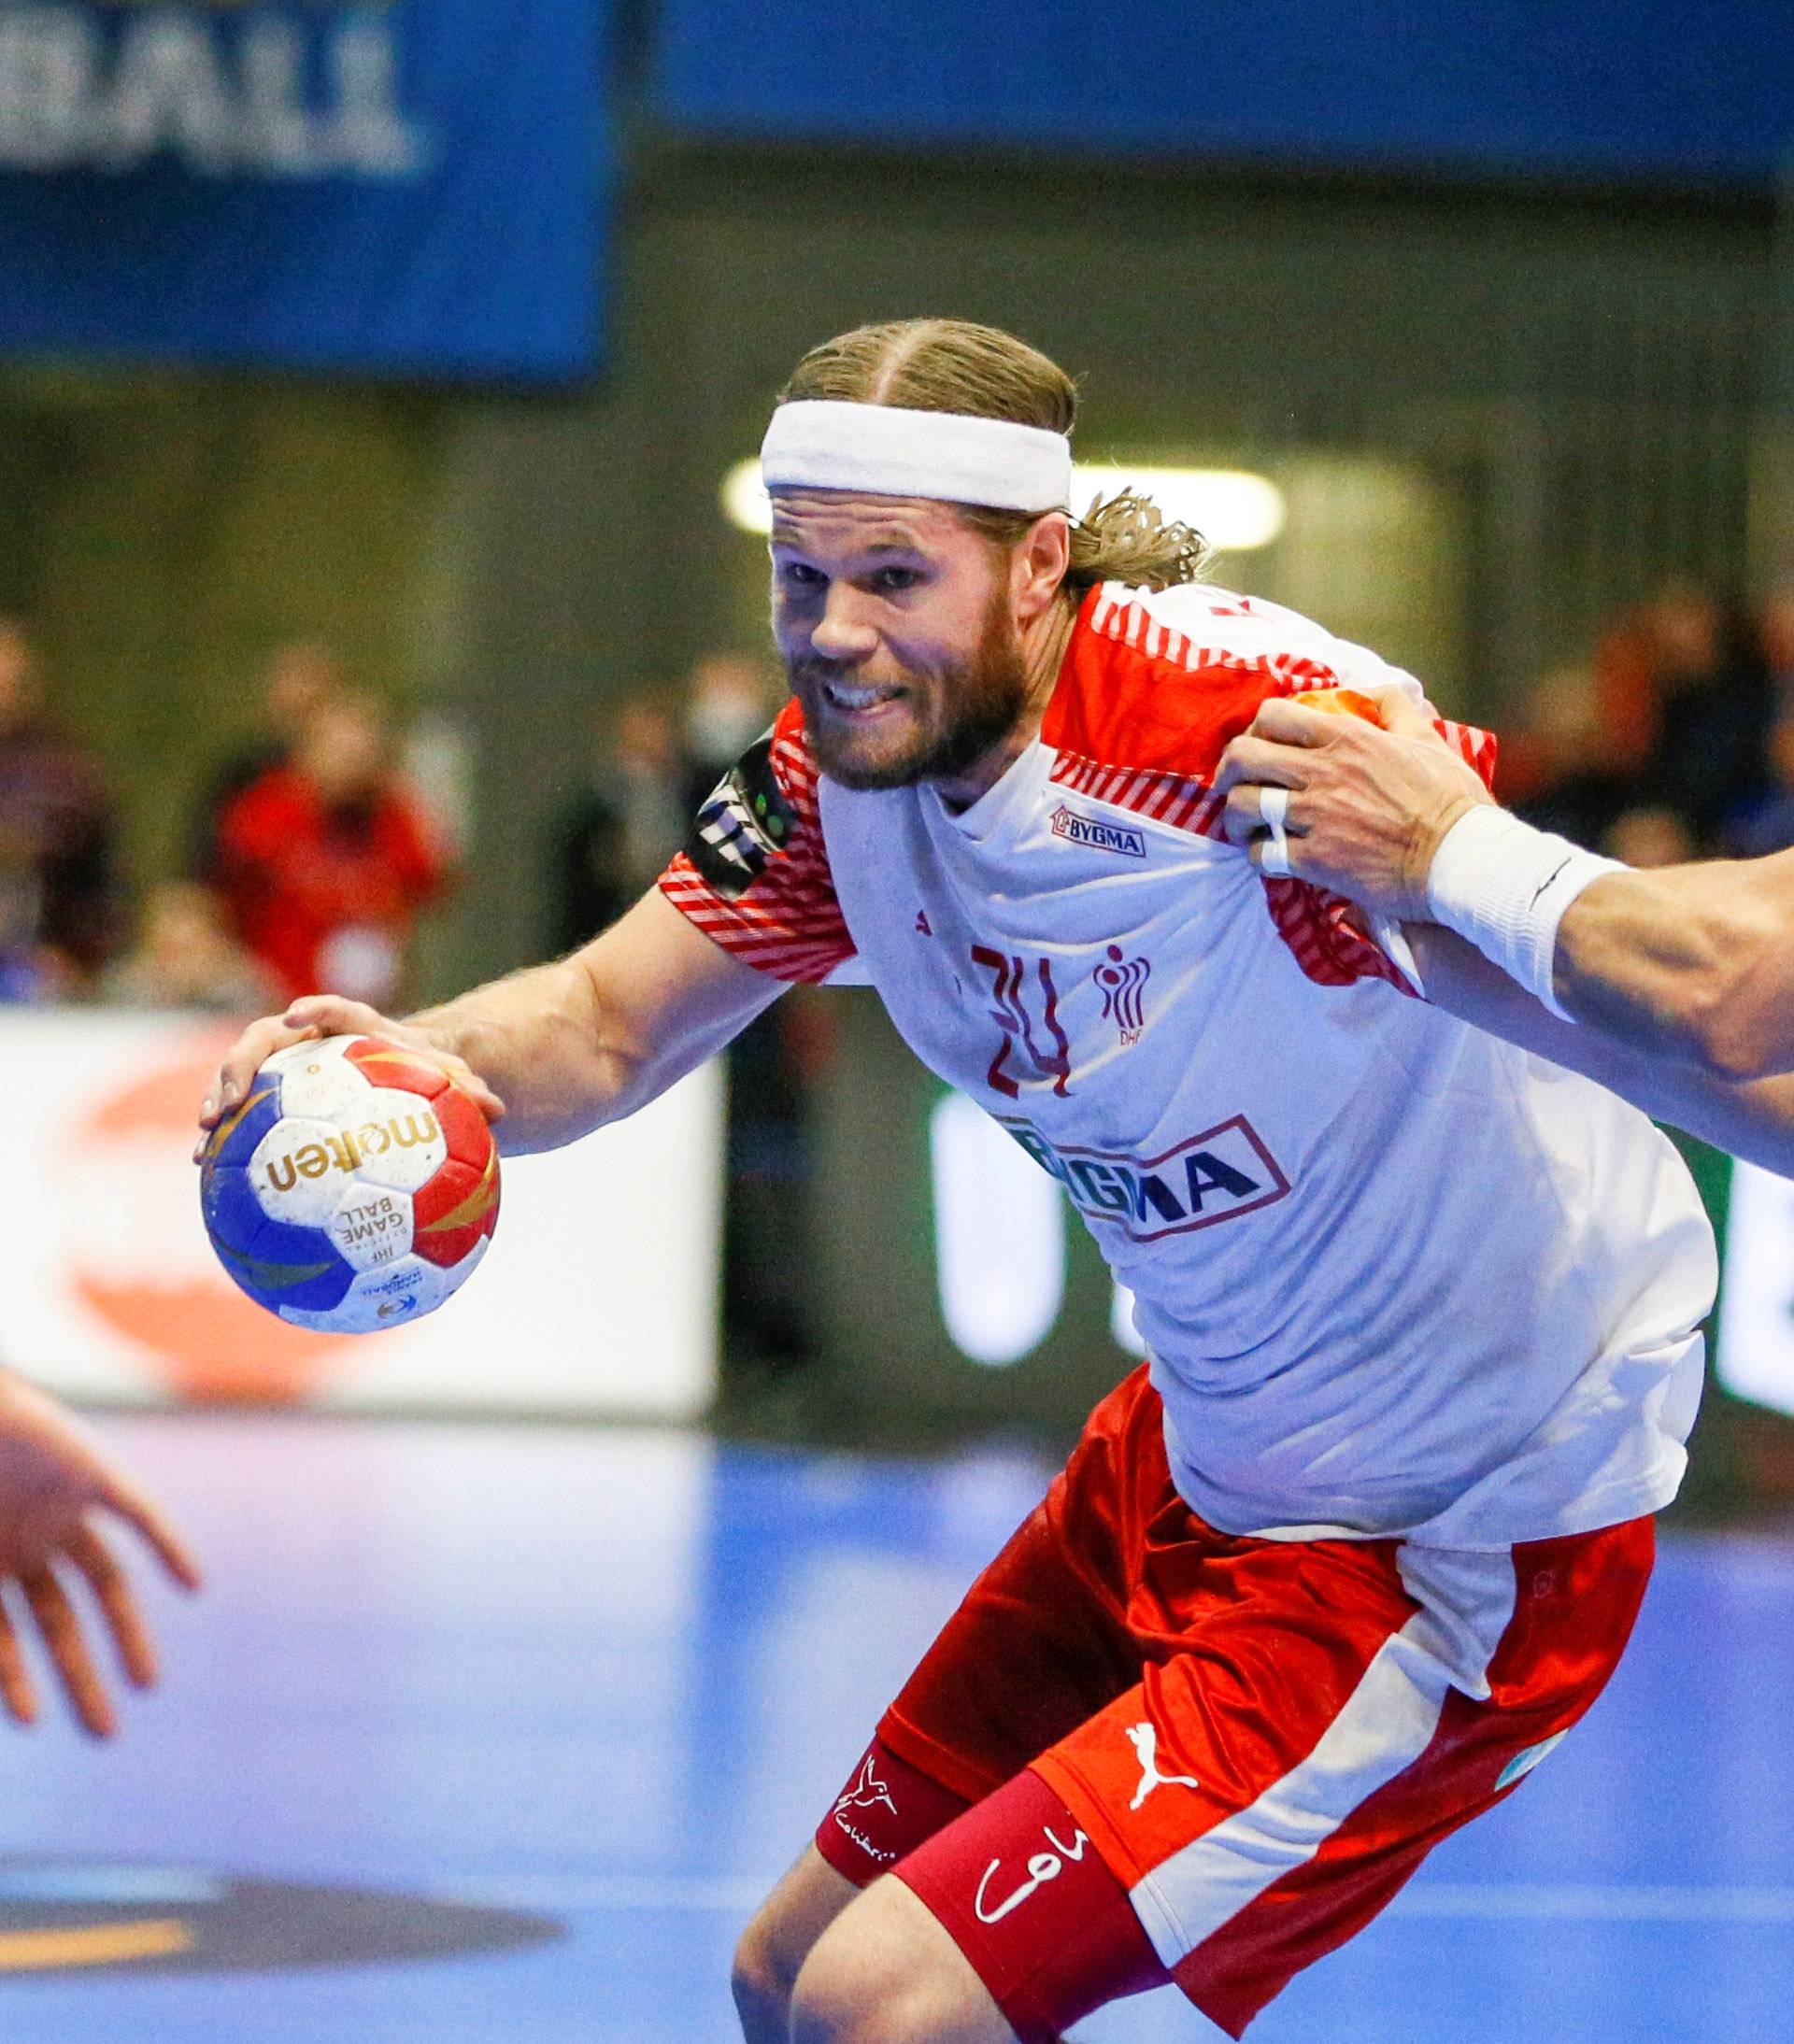 Menâs Handball - Denmark v Hungary - 2017 Men's World Championship Second Round, Eighth Finals